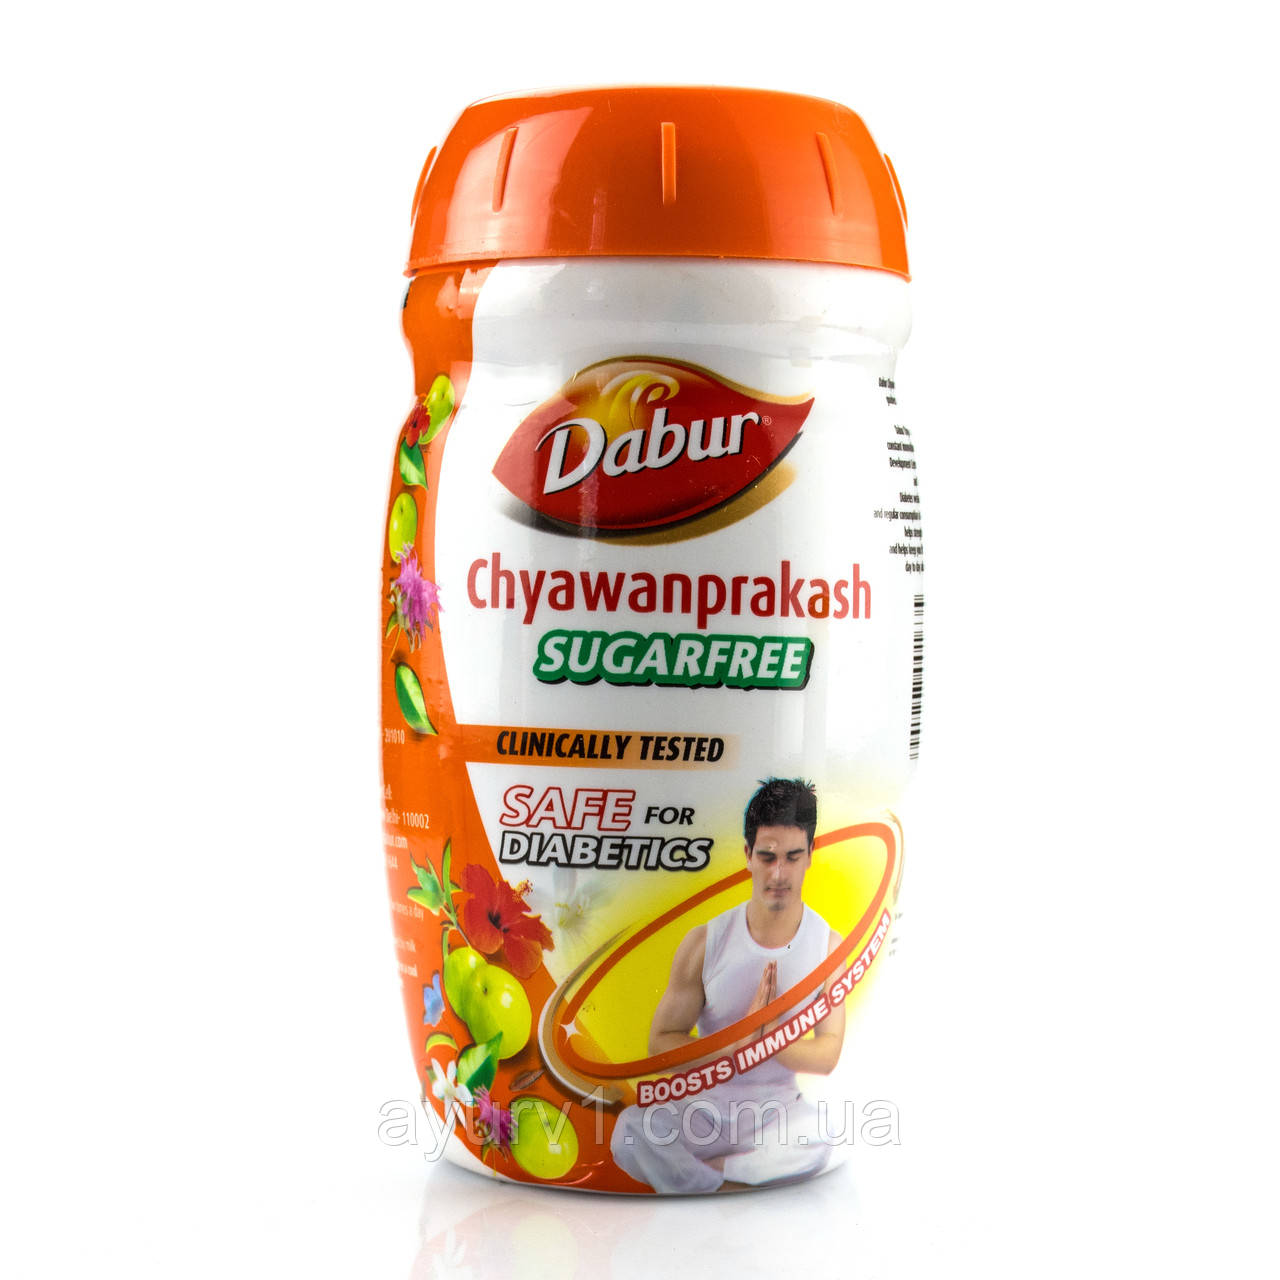 Чаванпраш Дабур без цукру/ Chyawanprakash, Dabur/500 gr